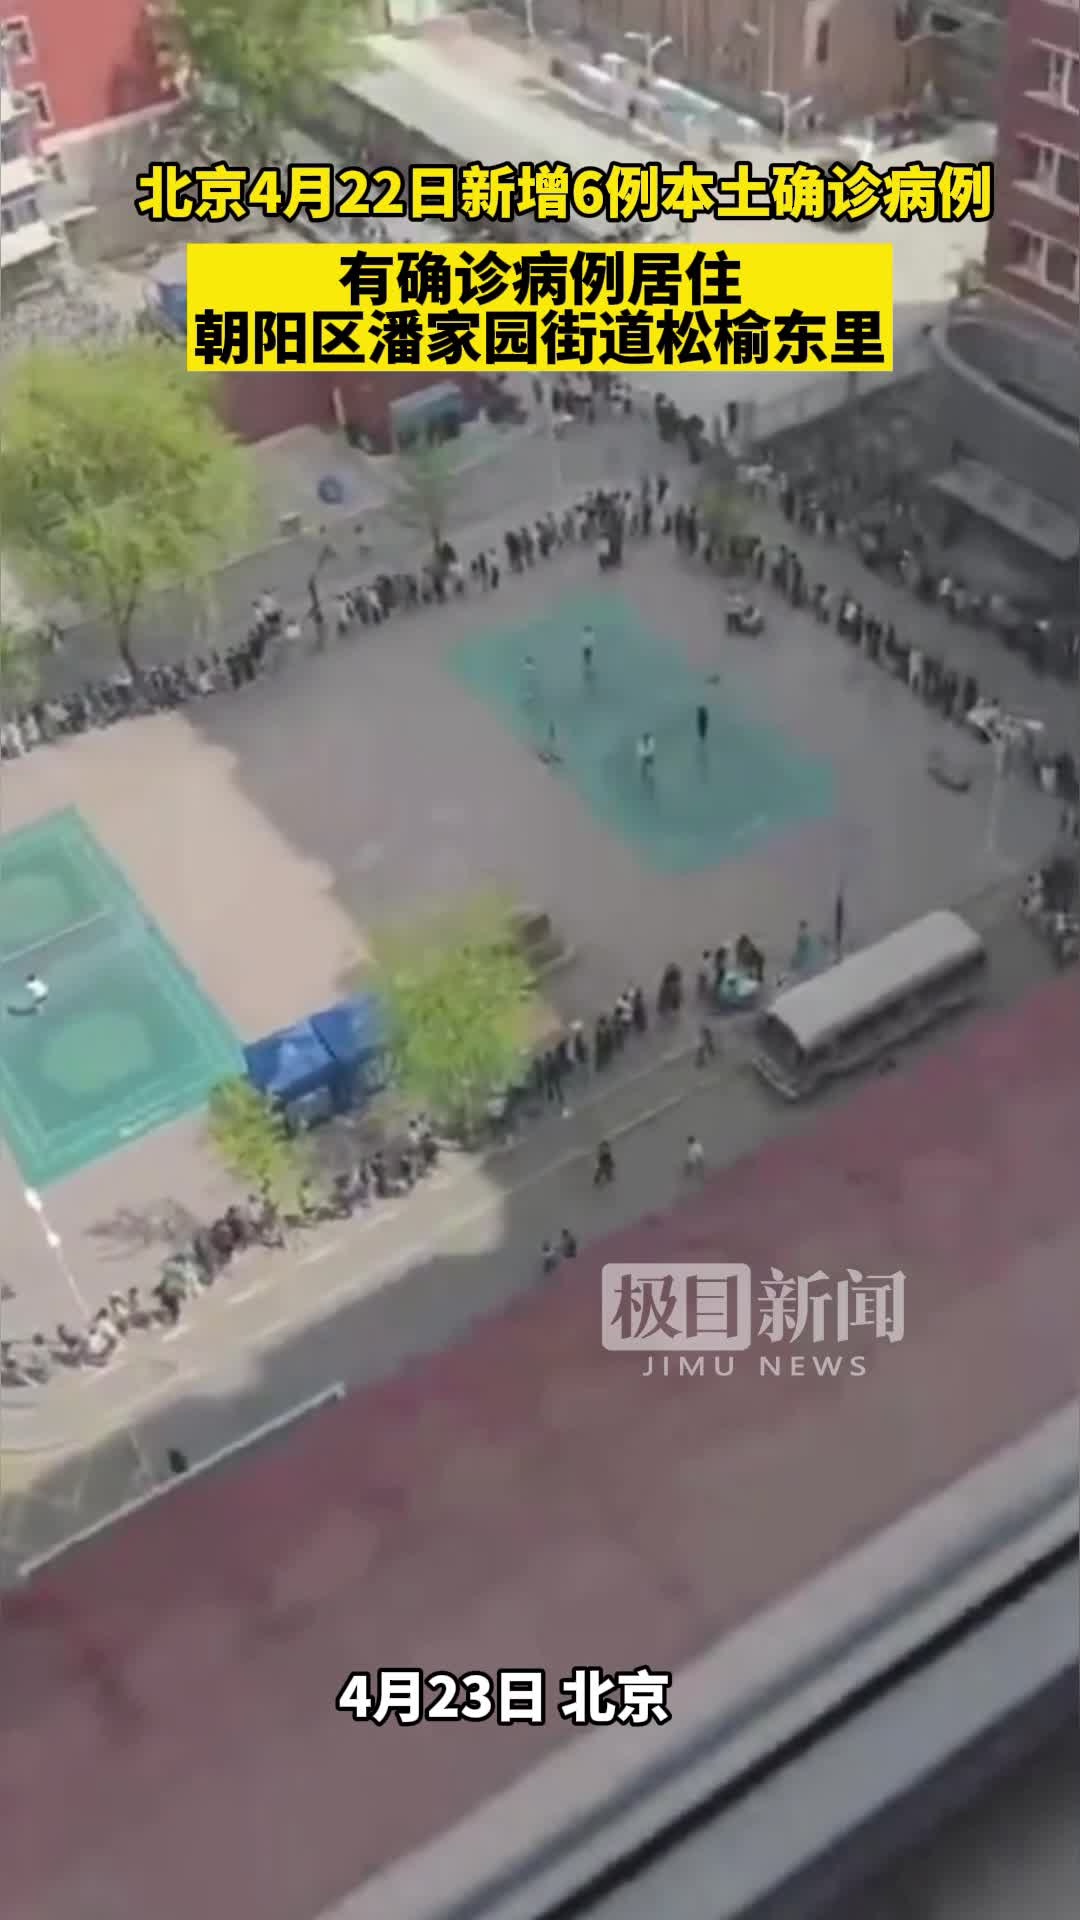 北京工业大学多名师生收到健康宝弹窗, 学校启动全员核酸